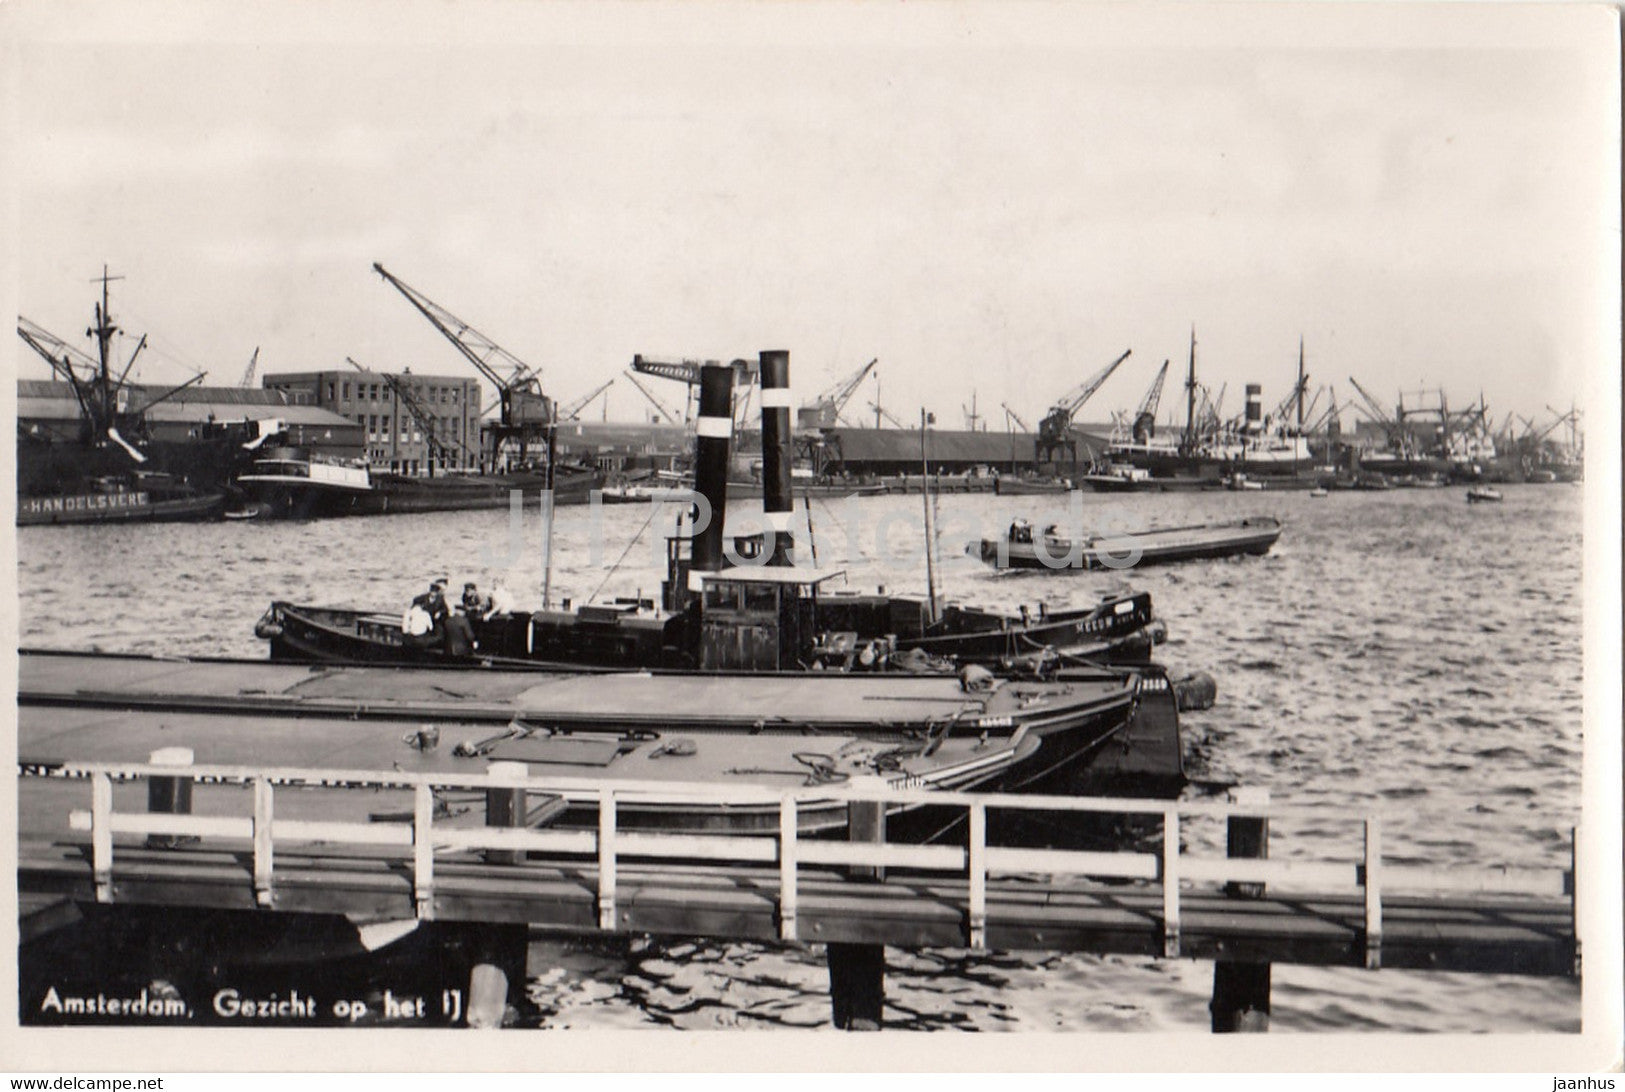 Amsterdam - Gezicht op het - steamer boat - ship - old postcard - 1935 - Netherlands - used - JH Postcards